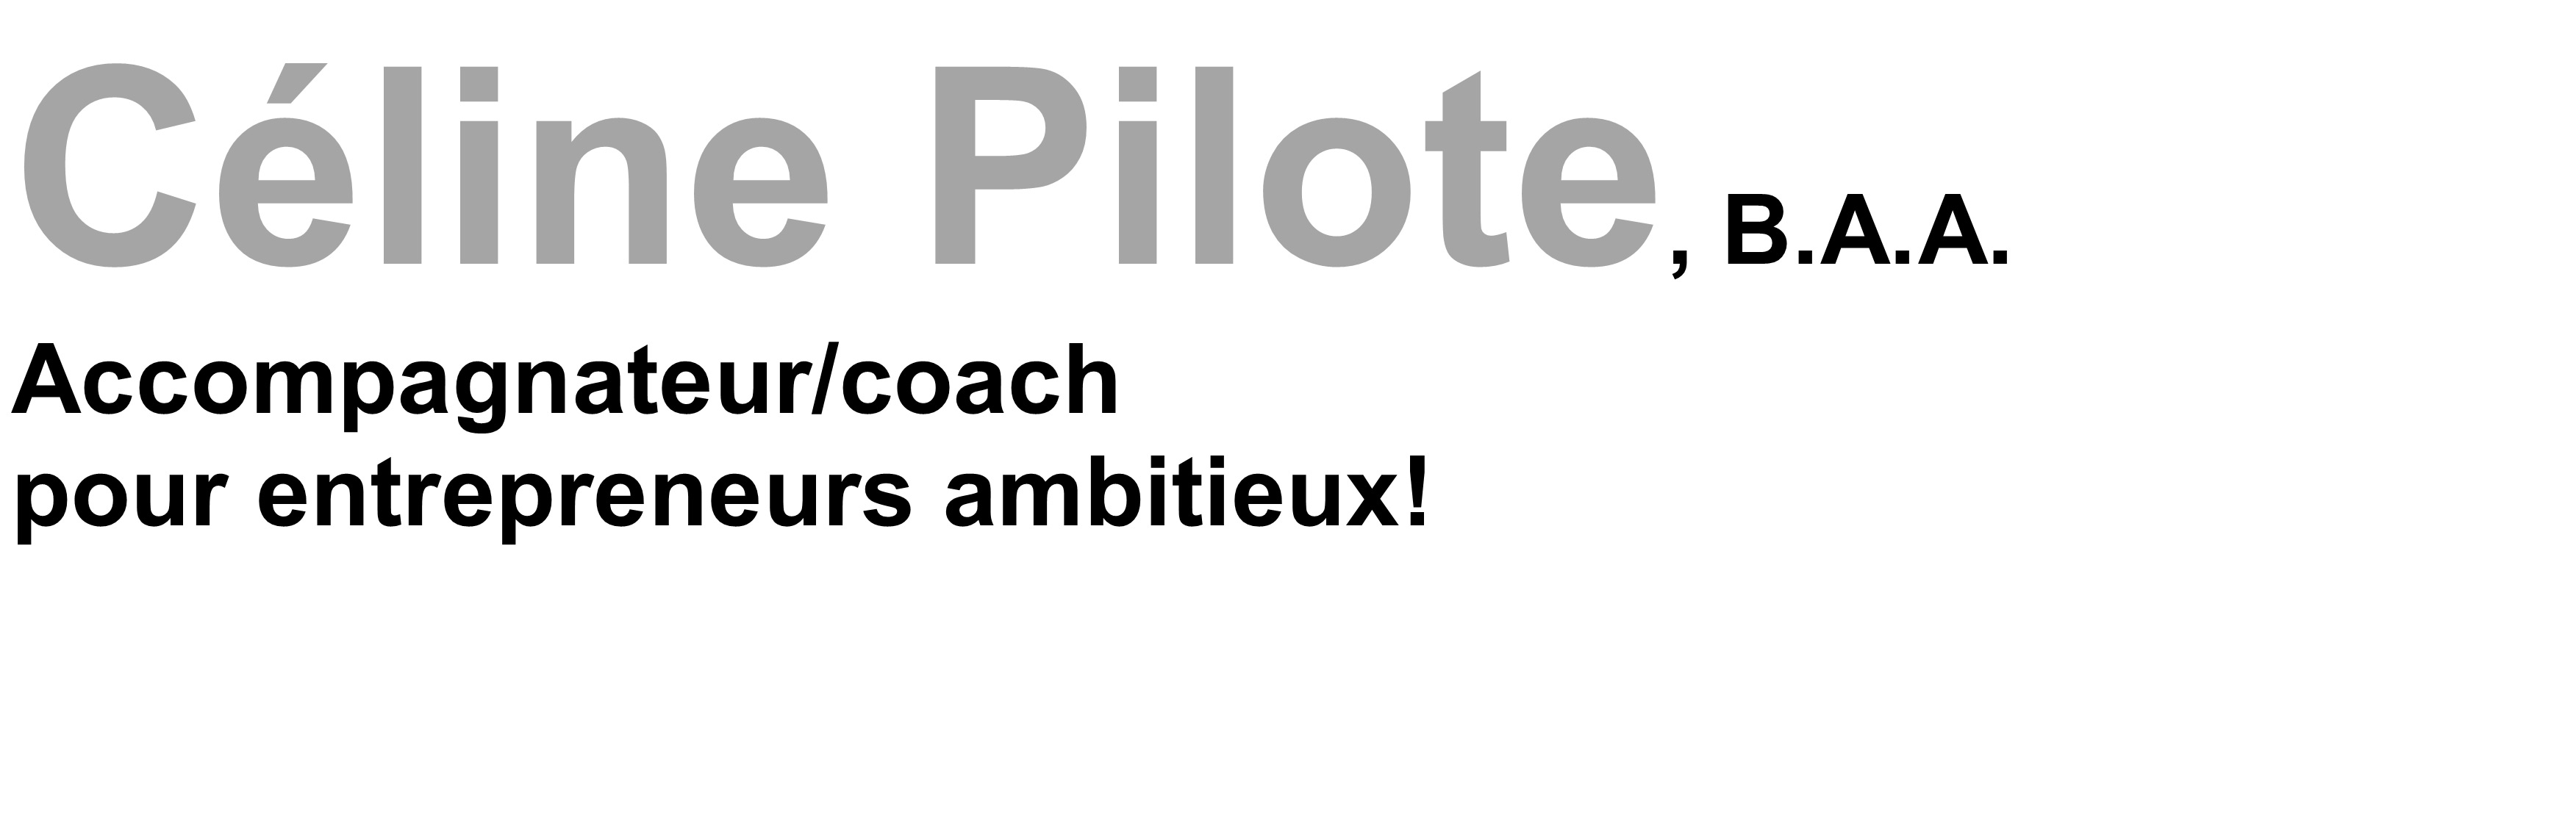 Céline Pilote, B.A.A. - Accompagnateur / coach pour entrepreneur